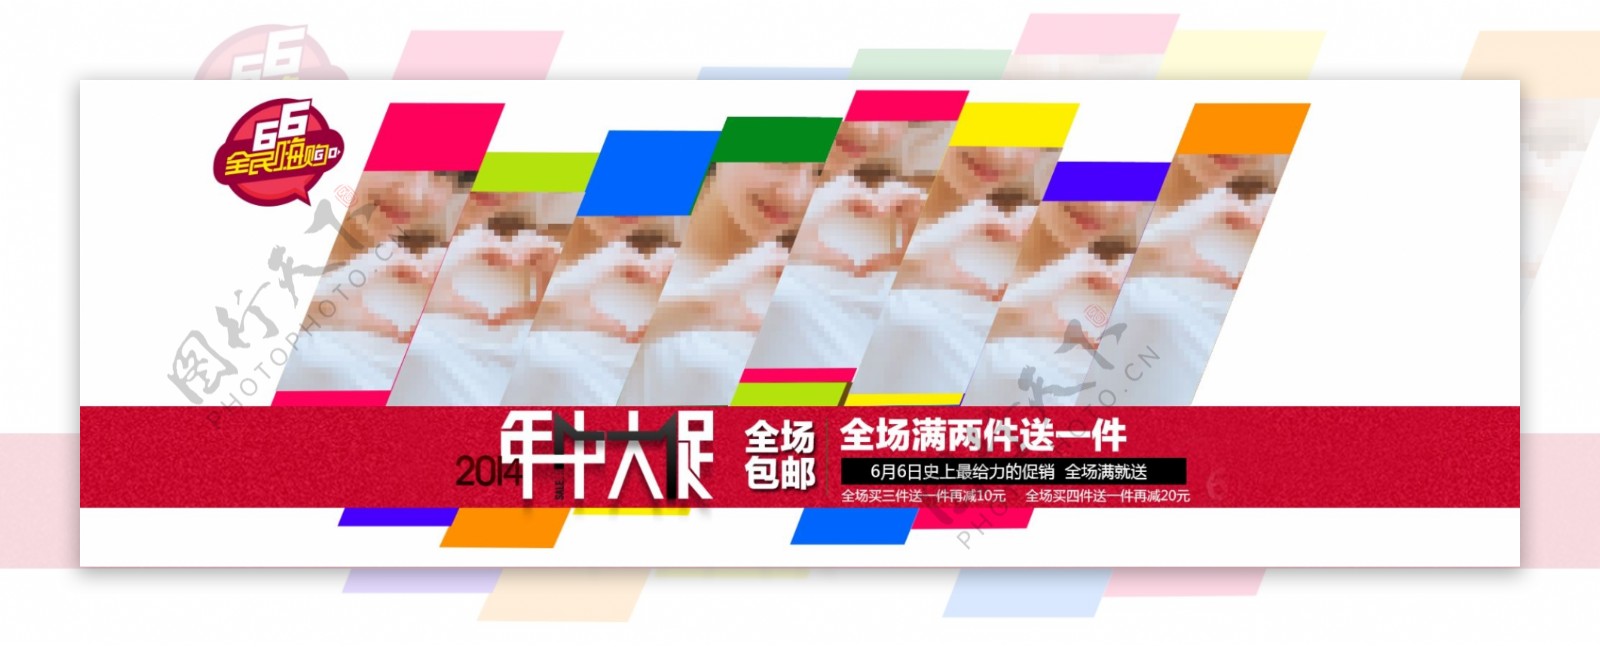 淘宝天猫轮播图活动女装韩版海报排版